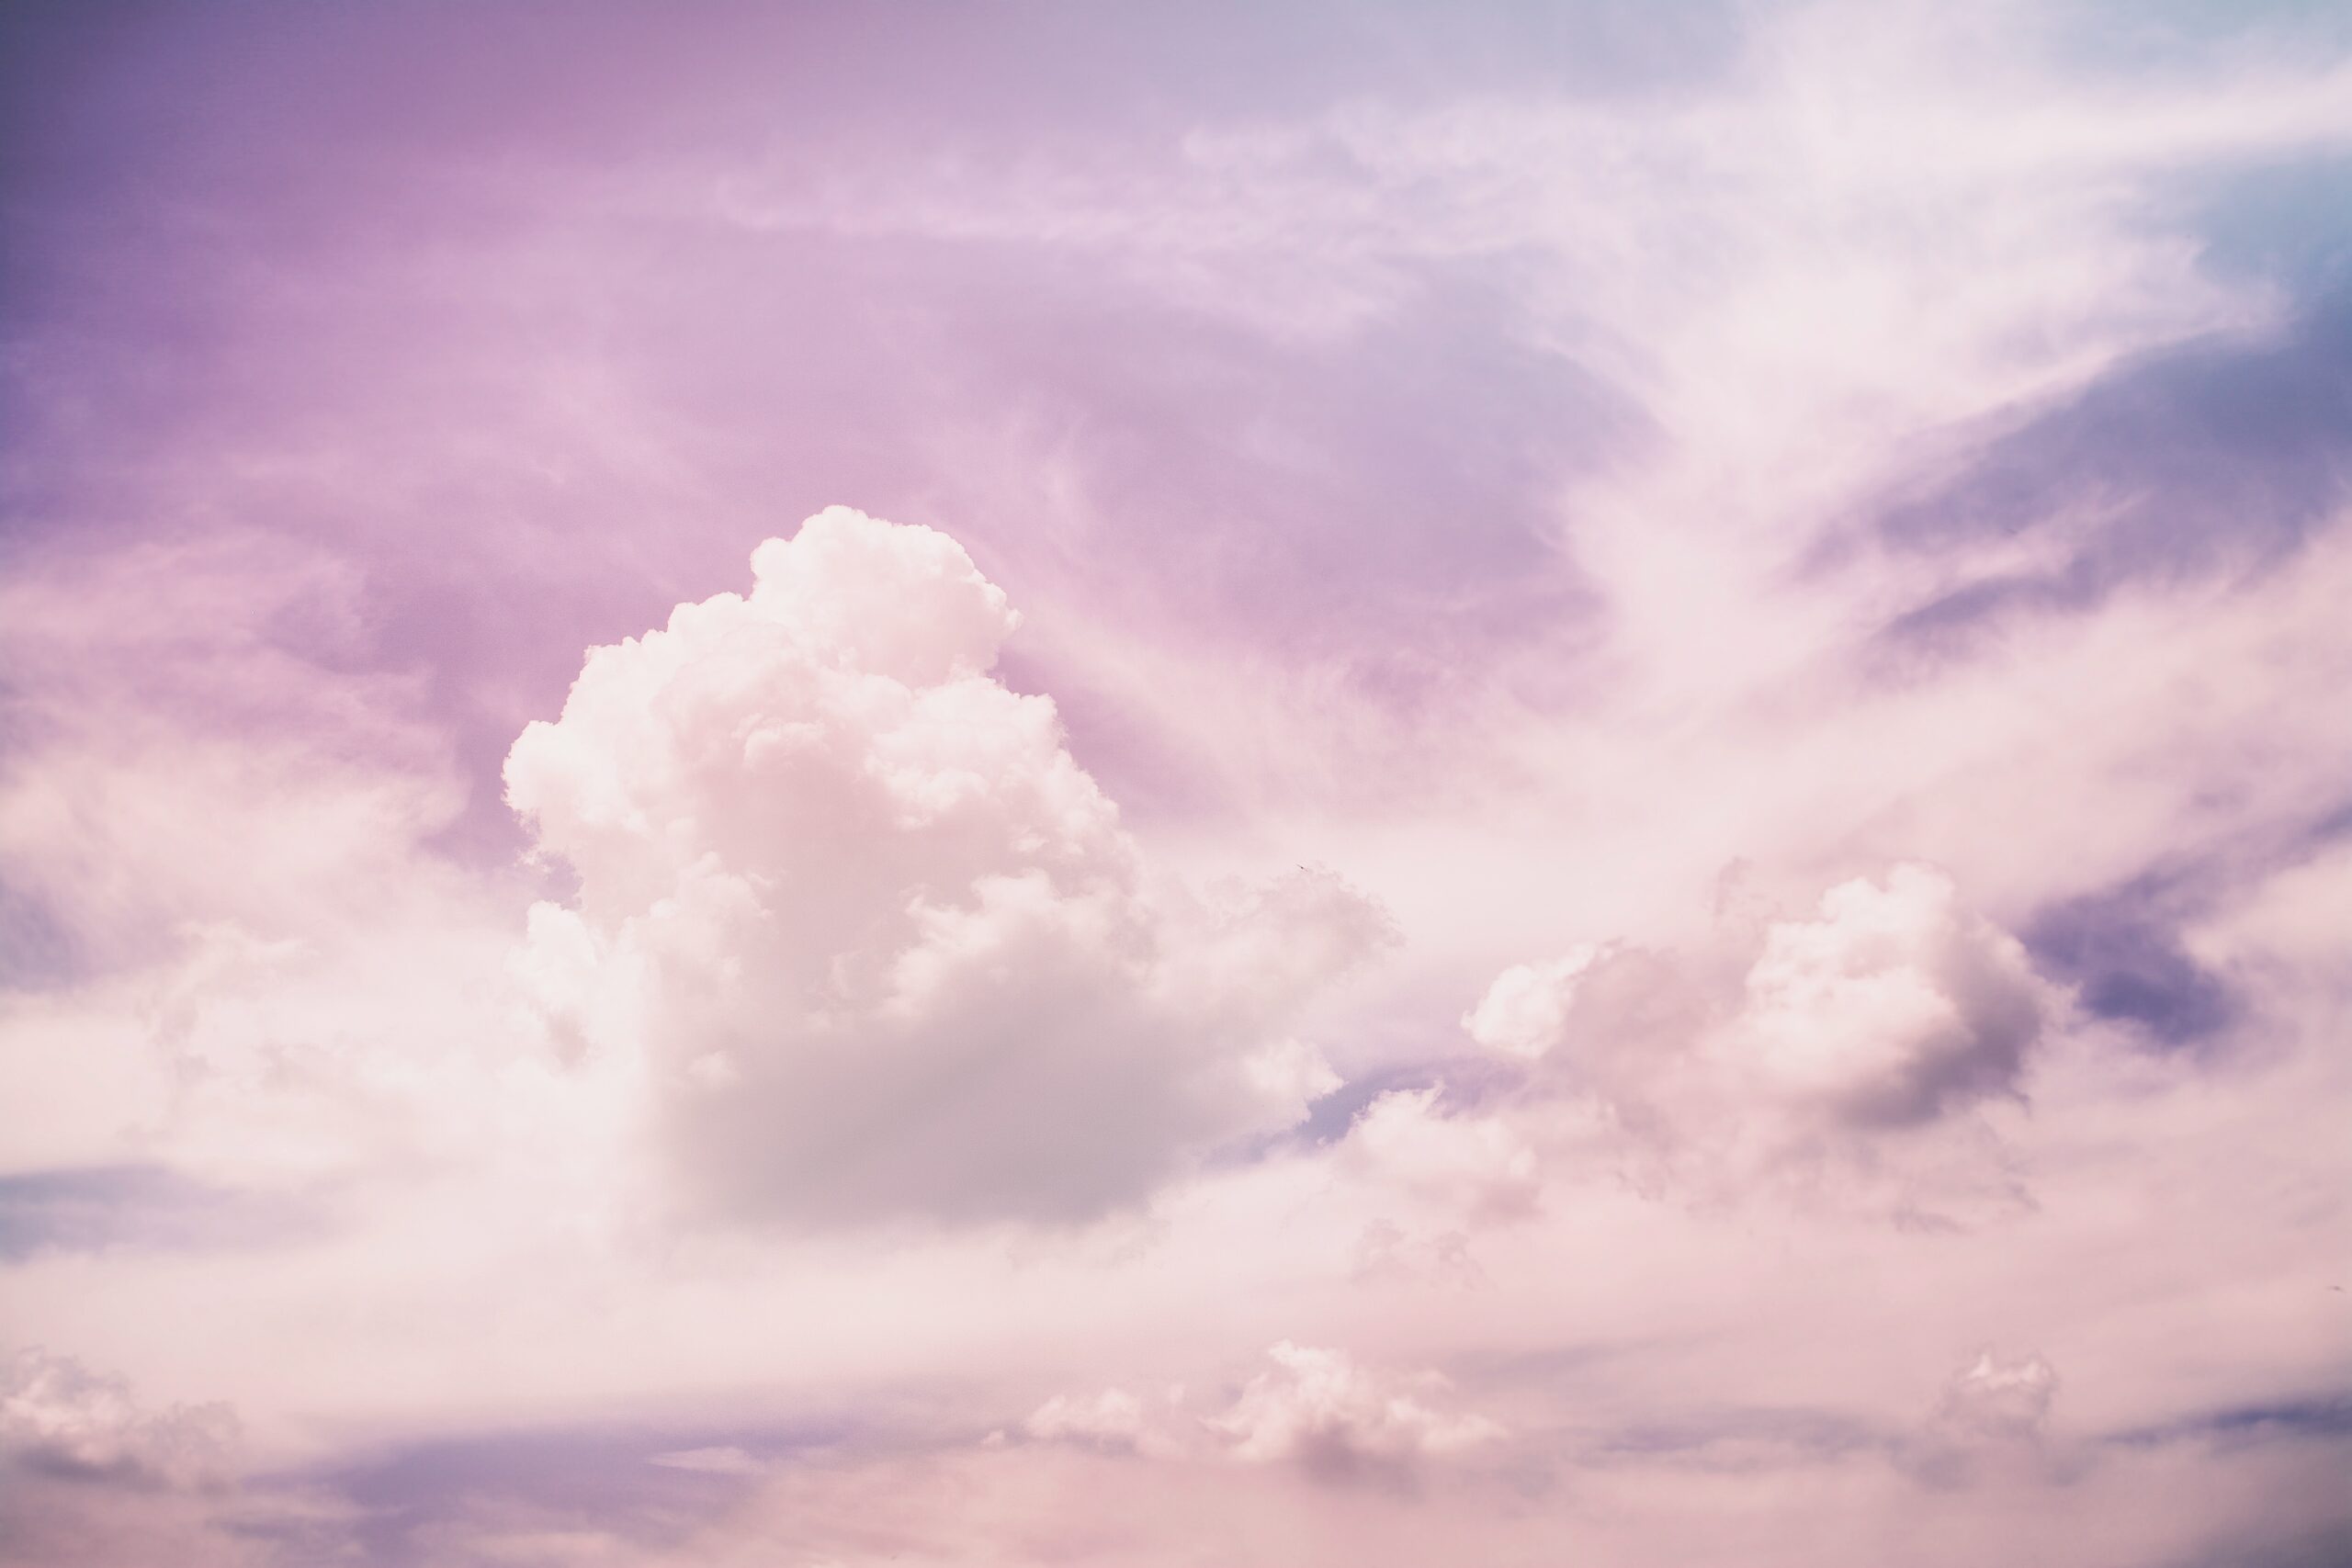 a photo of clouds in the sky, in a purple tone